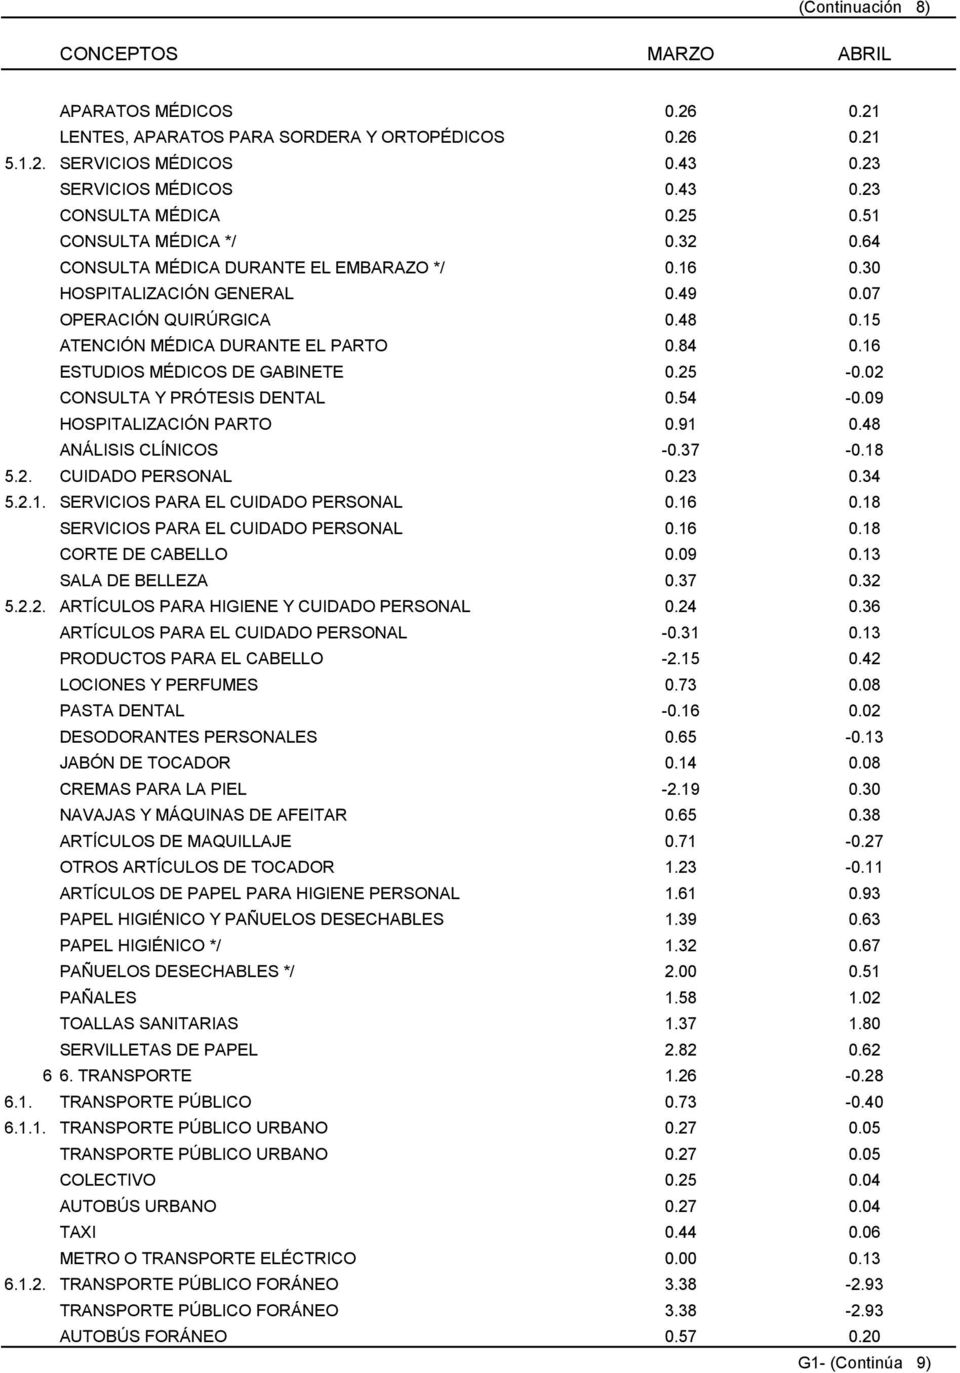 16 ESTUDIOS MÉDICOS DE GABINETE 0.25-0.02 CONSULTA Y PRÓTESIS DENTAL 0.54-0.09 HOSPITALIZACIÓN PARTO 0.91 0.48 ANÁLISIS CLÍNICOS -0.37-0.18 5.2. CUIDADO PERSONAL 0.23 0.34 5.2.1. SERVICIOS PARA EL CUIDADO PERSONAL 0.